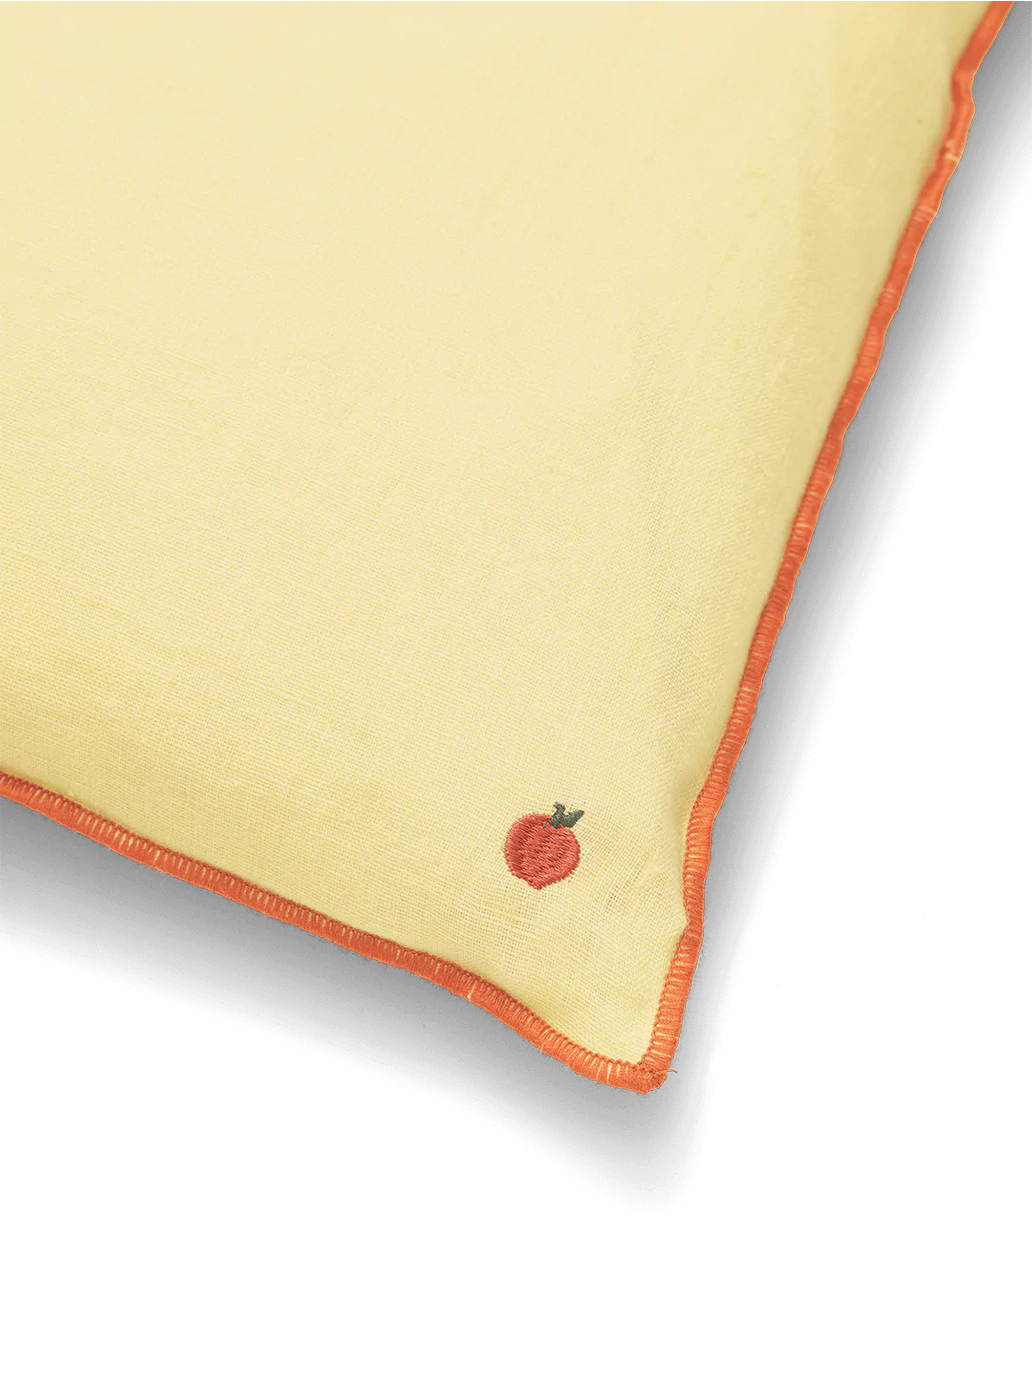 Almohada de lino con costuras en contraste.